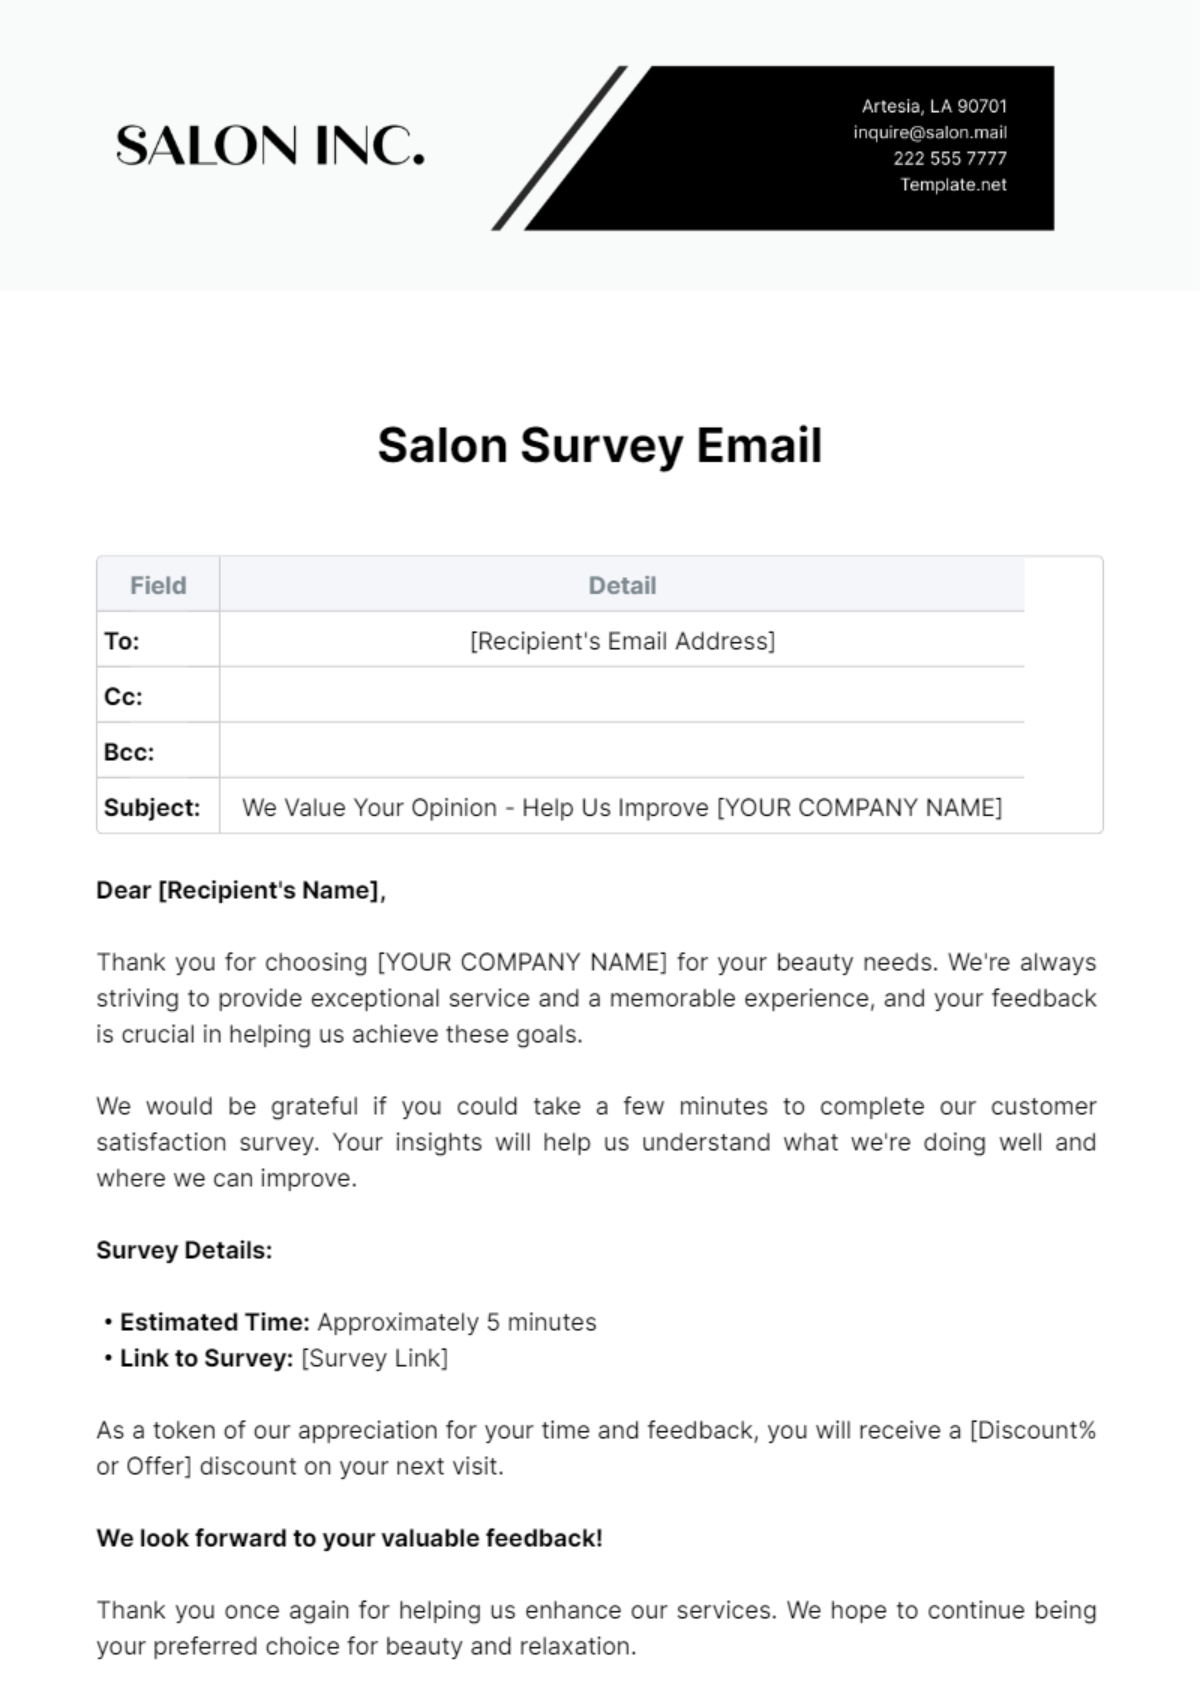 Salon Survey Email Template